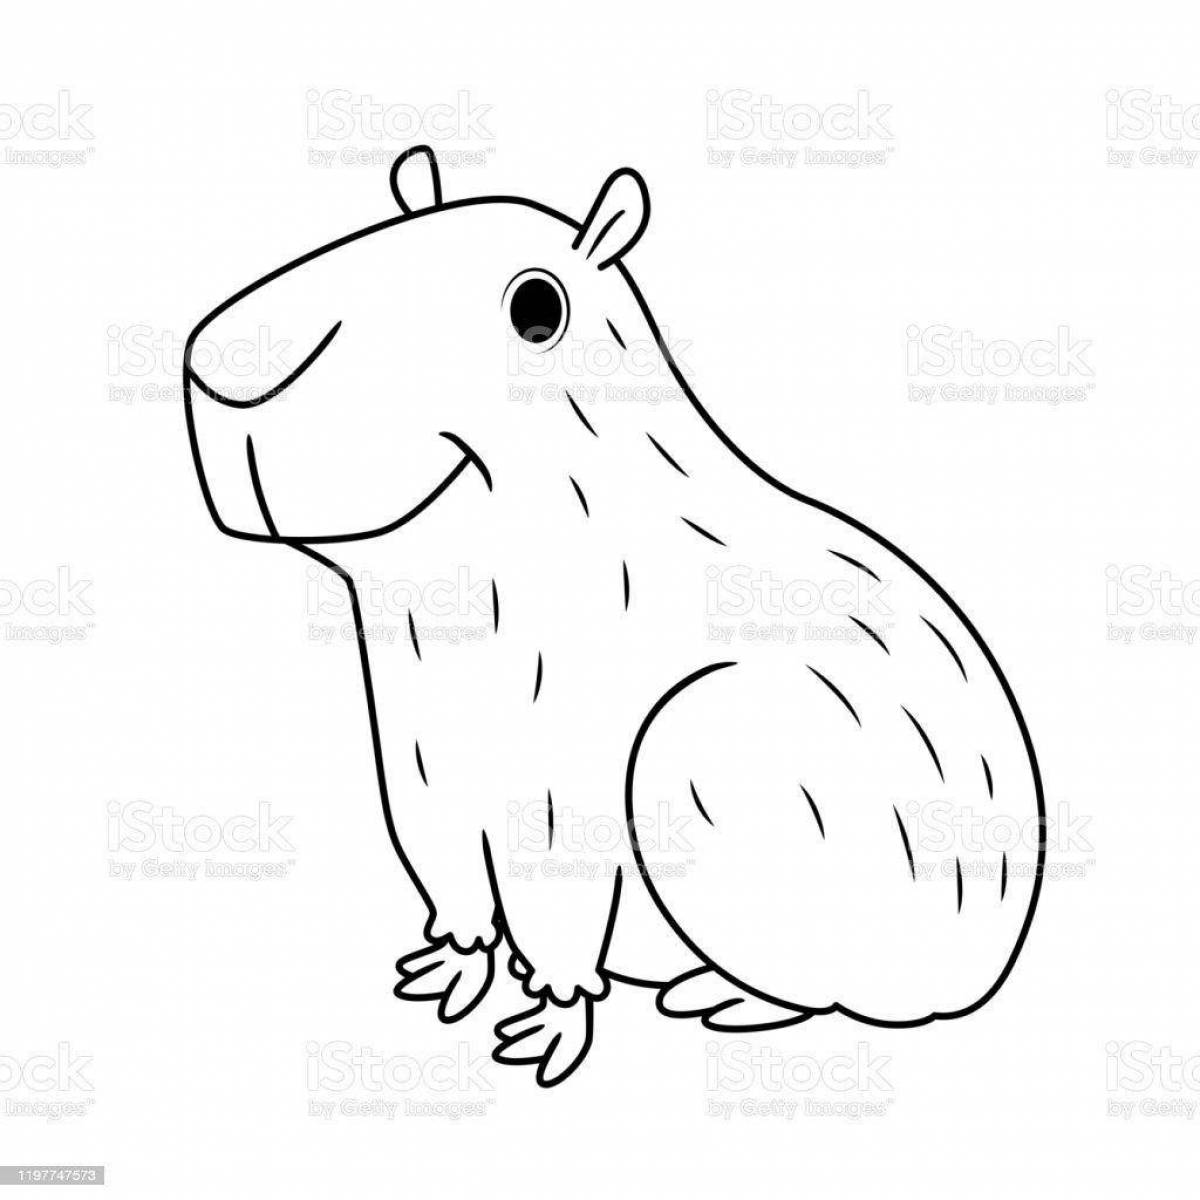 Adorable capybara coloring book for kids